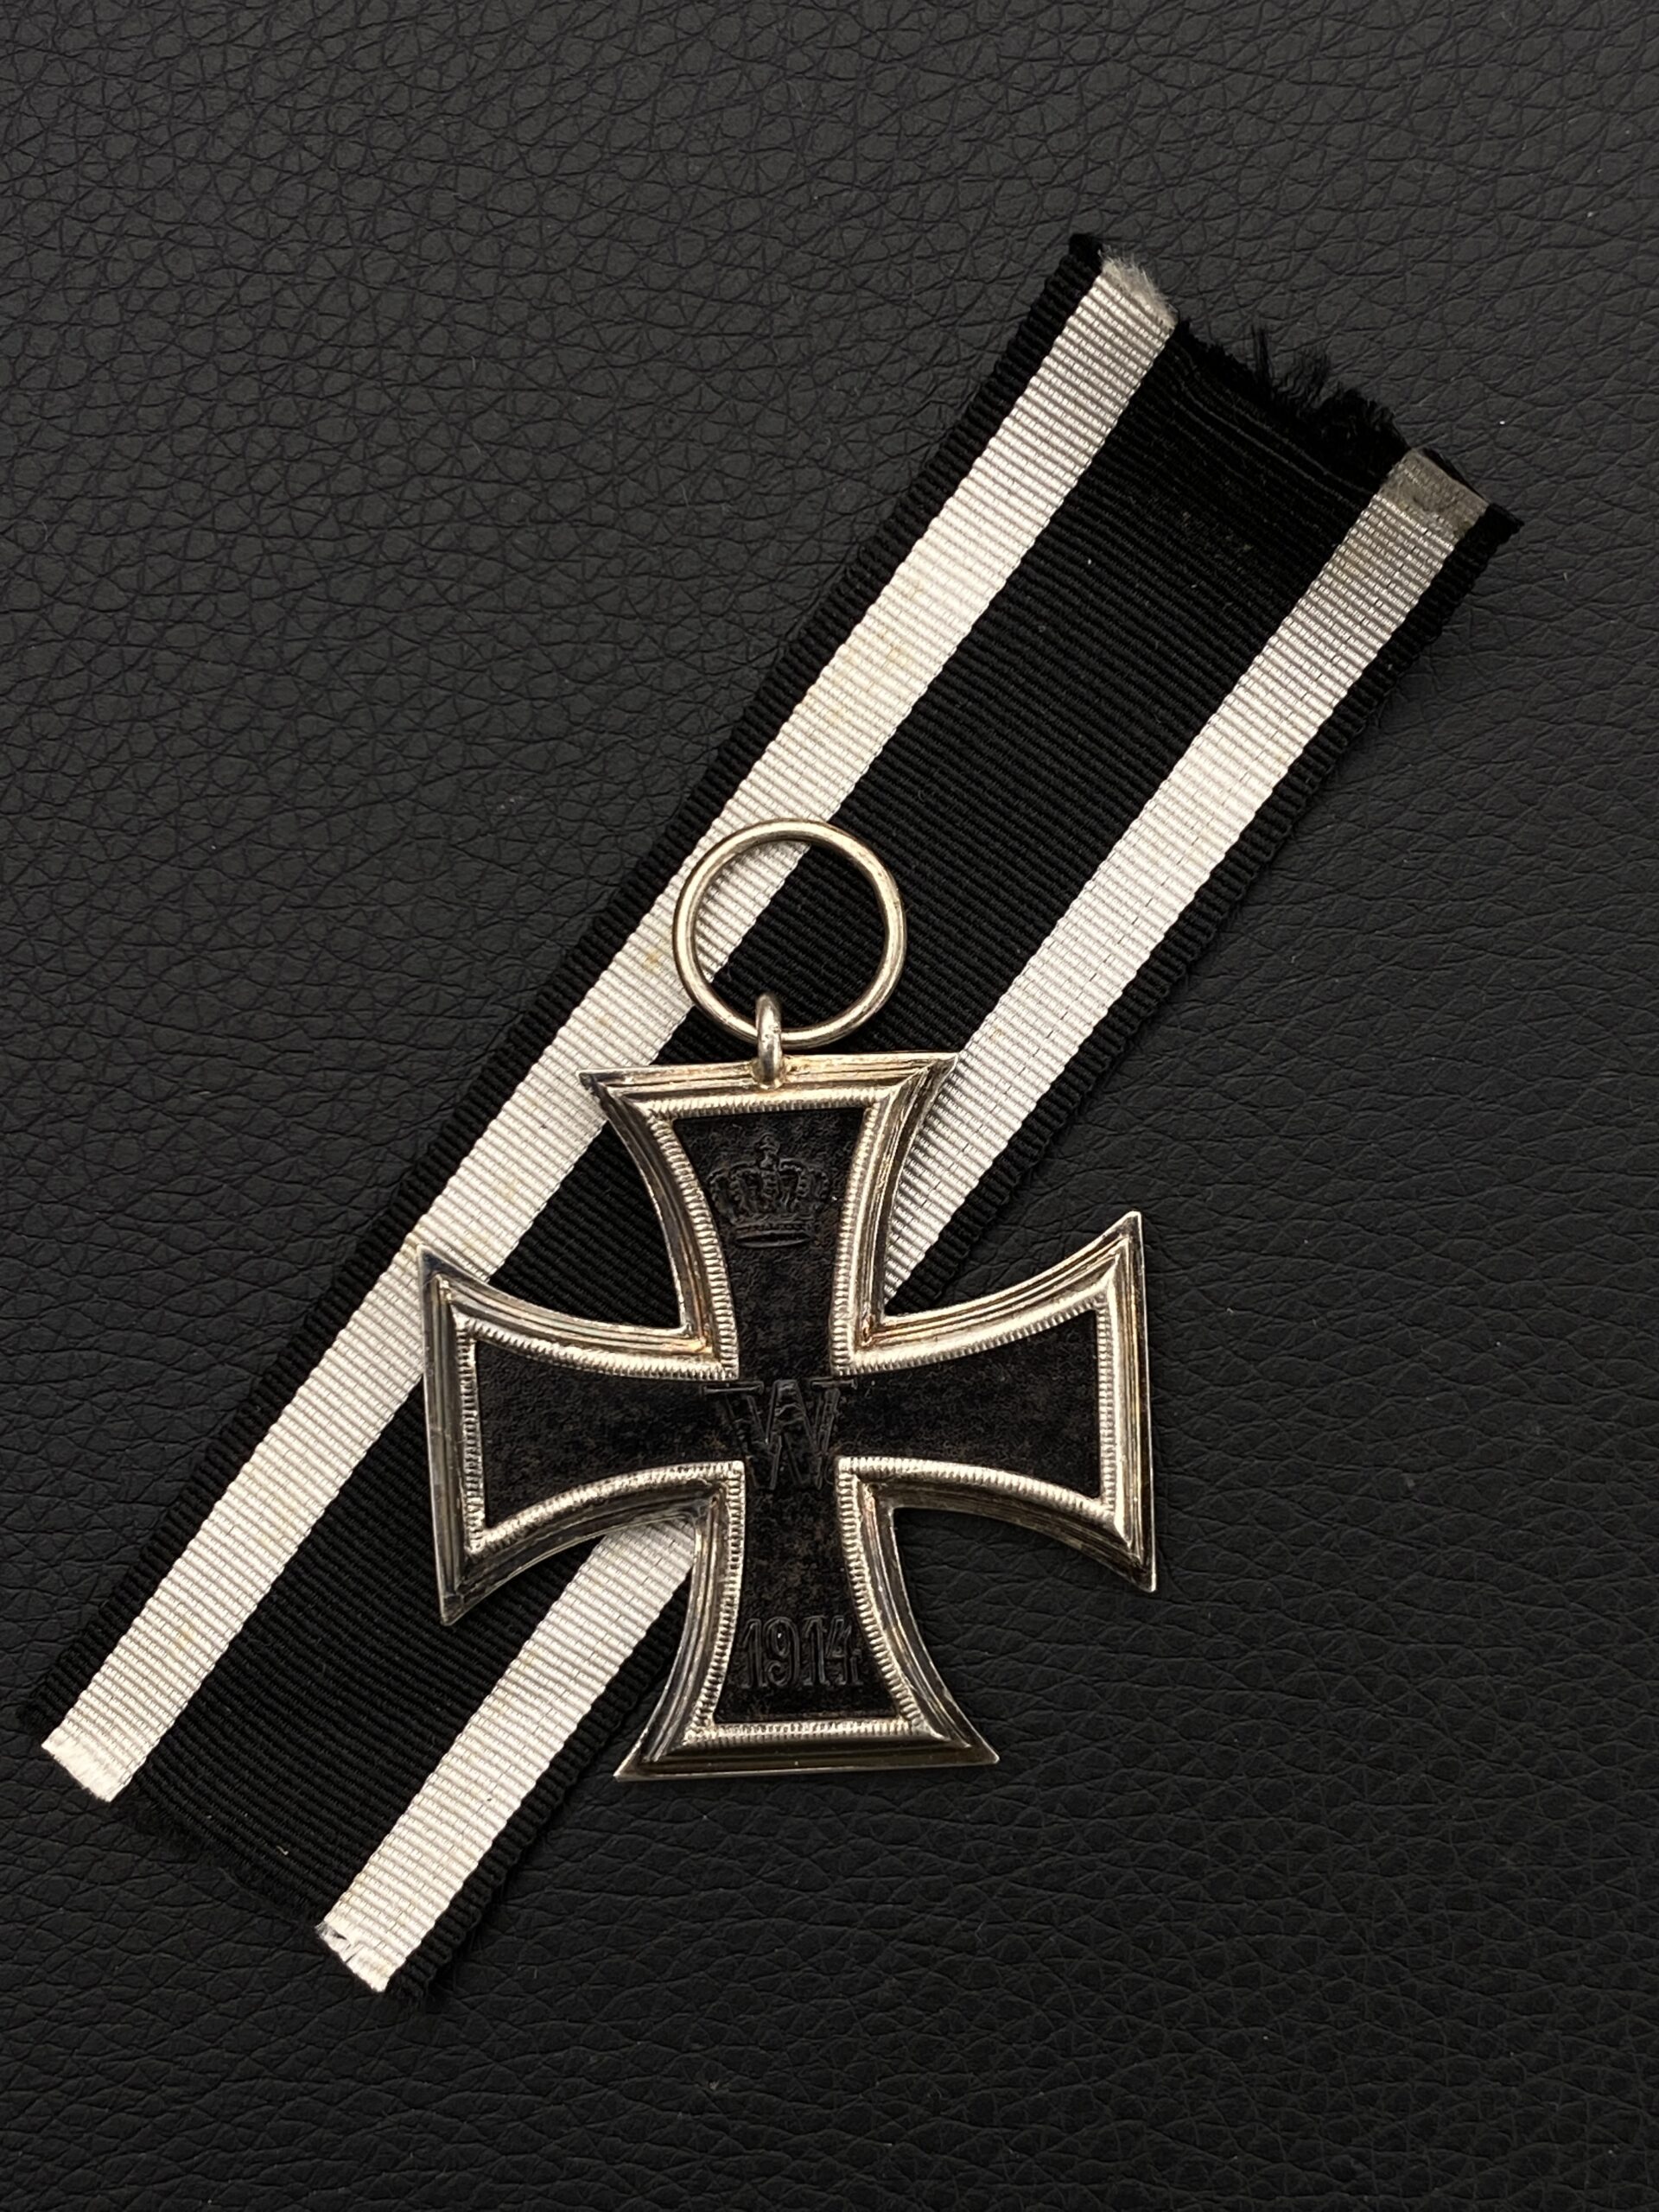 Железный крест 2-го класса 1914 г.